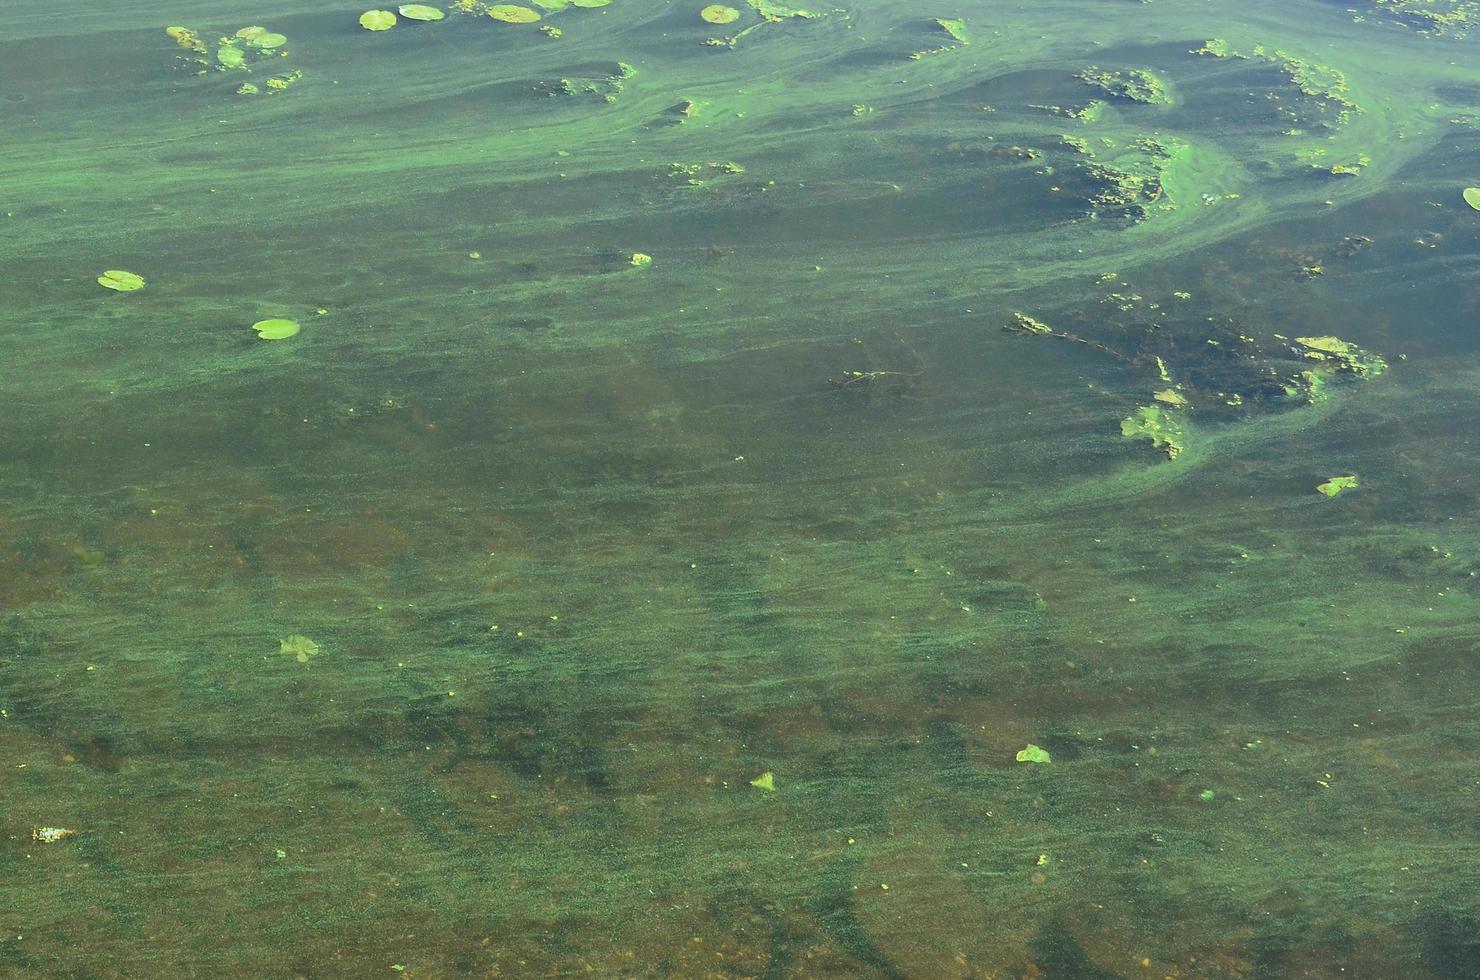 die Oberfläche eines alten Sumpfes, der mit Wasserlinsen und Lilienblättern bedeckt ist foto